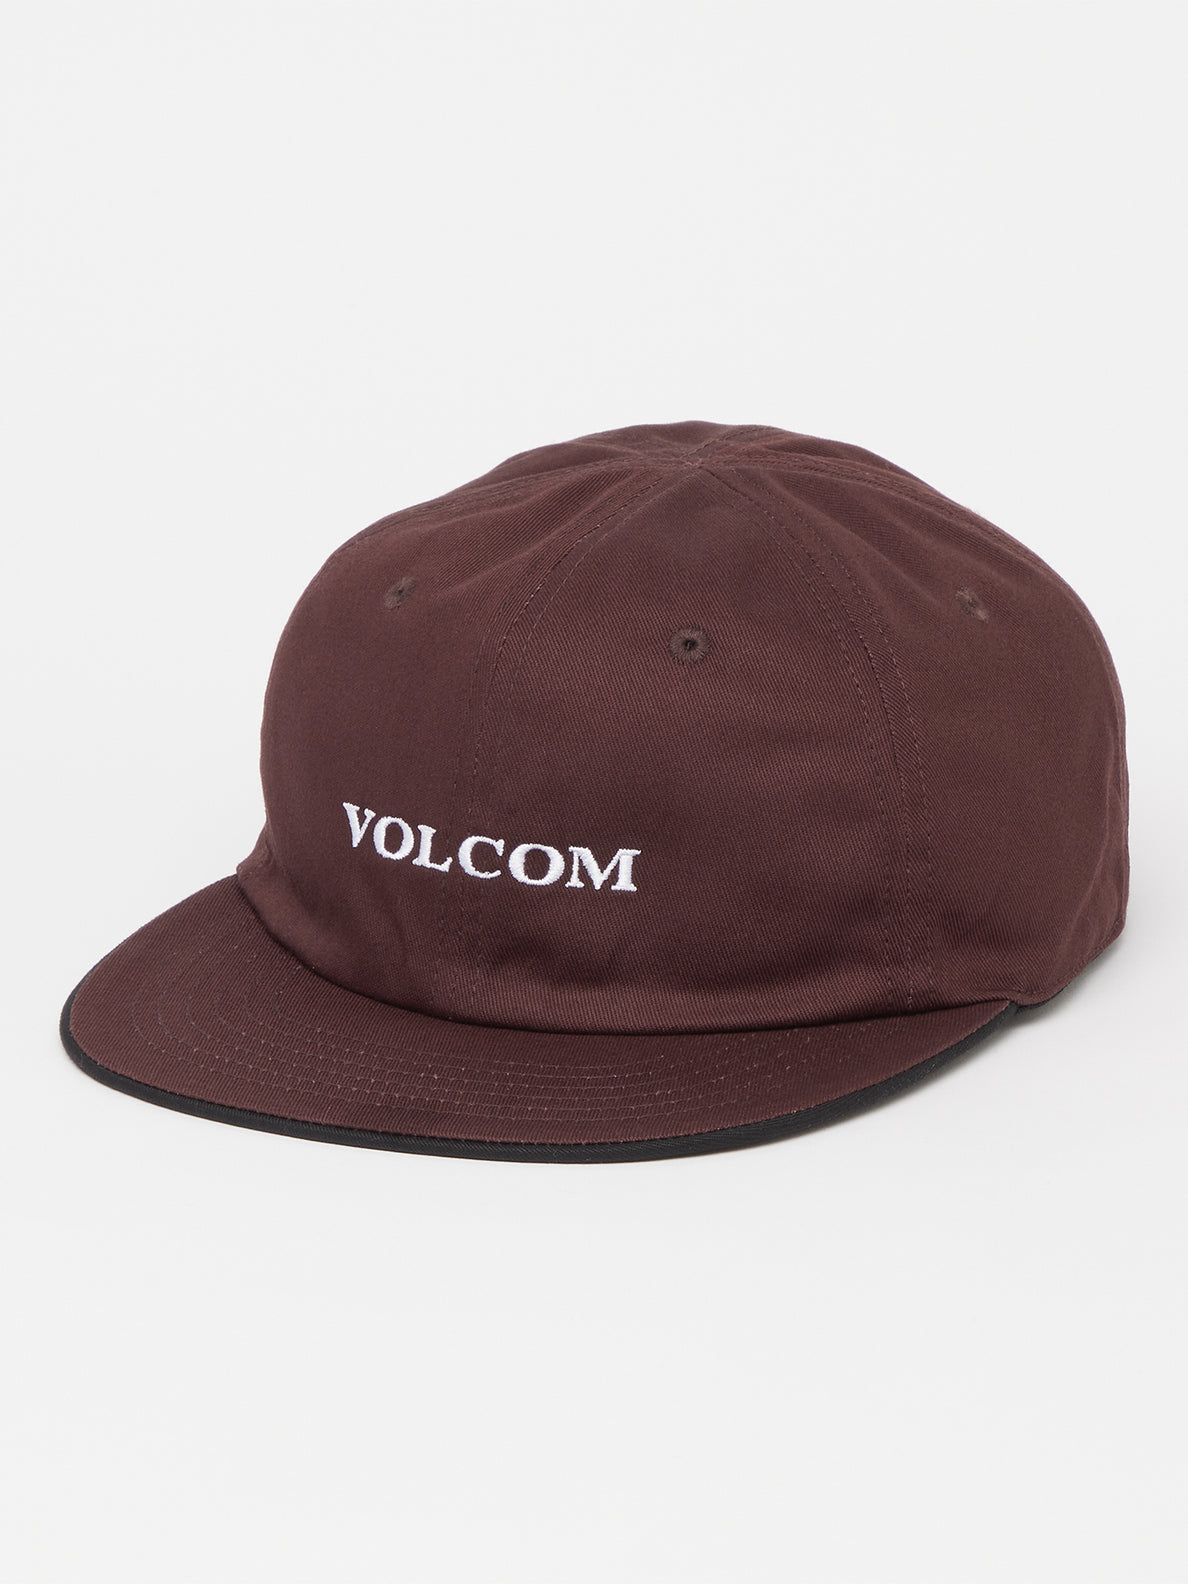 Dime Hat for Men Baseball Hat Sun for Choice Casquette Utdoor Hats